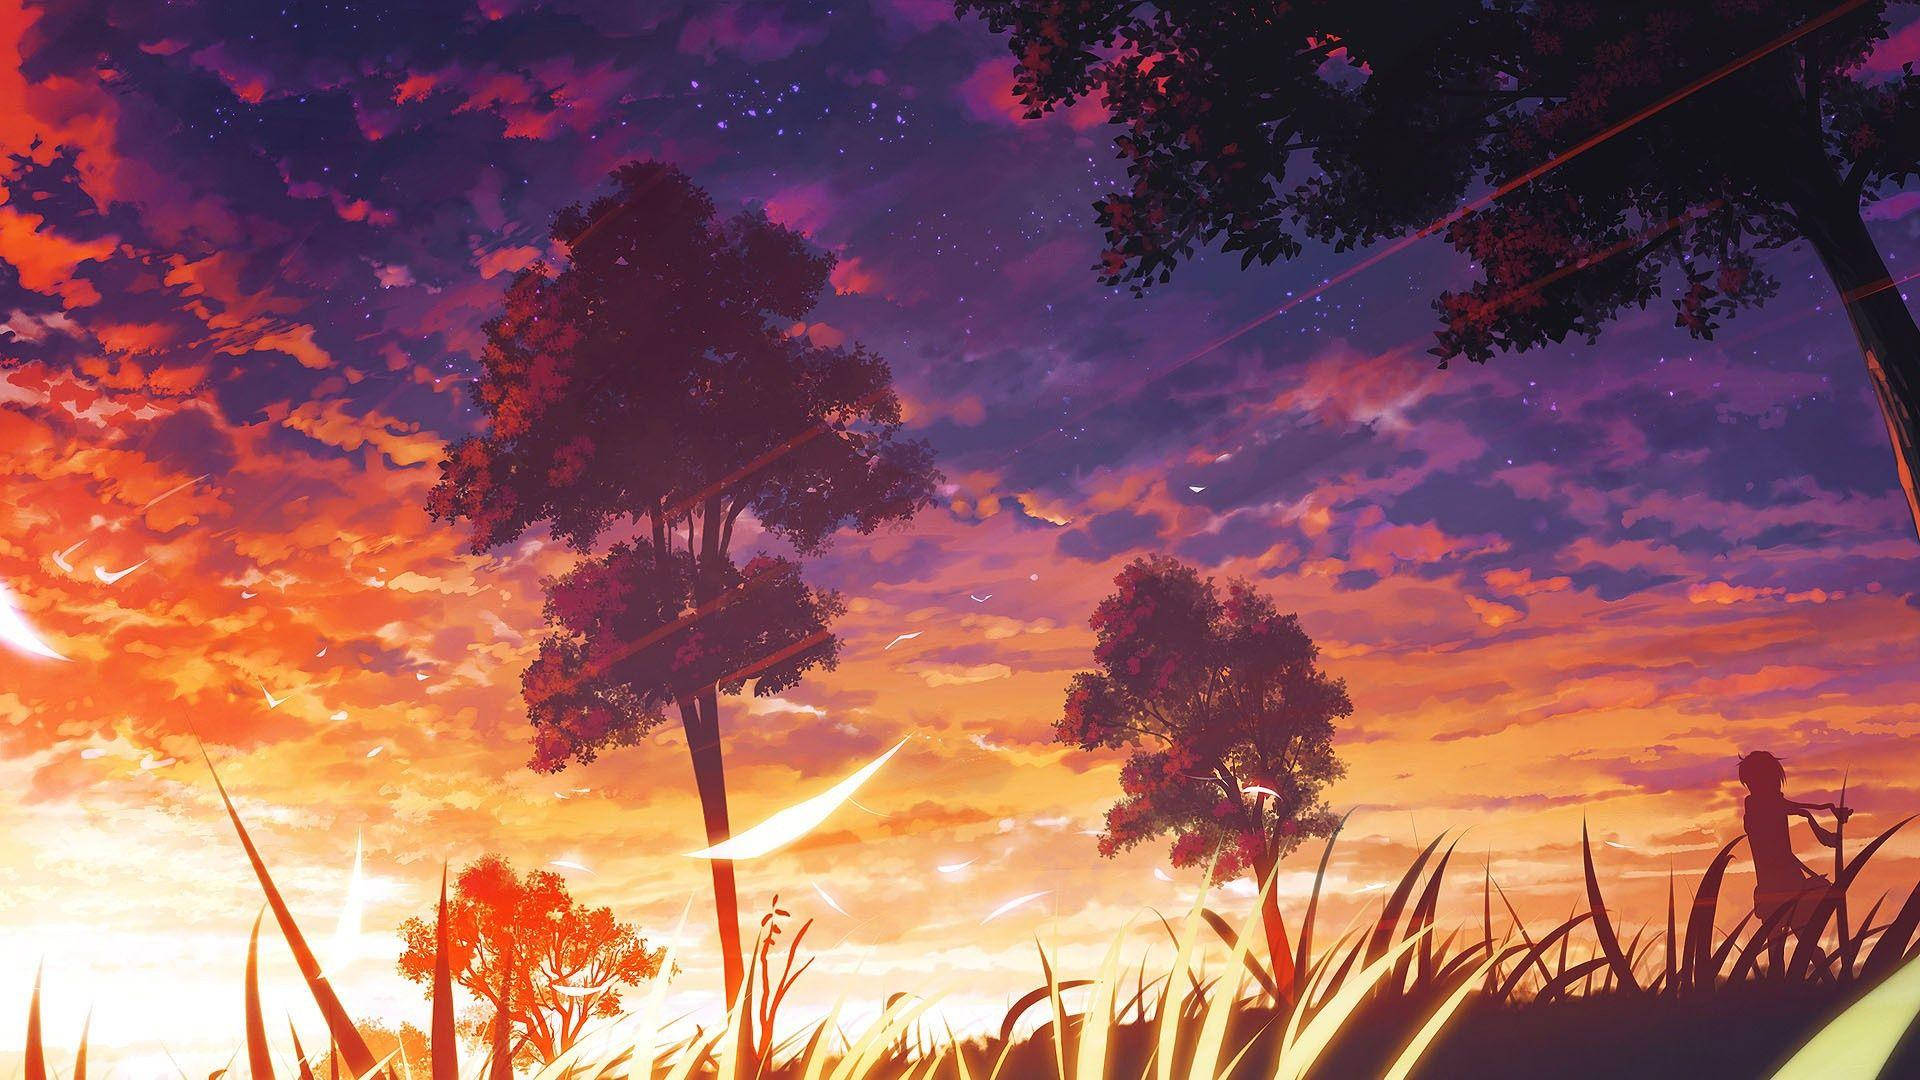 Árvorese Nuvens Em Um Pôr Do Sol Estético De Anime Para Papel De Parede De Computador Ou Celular. Papel de Parede